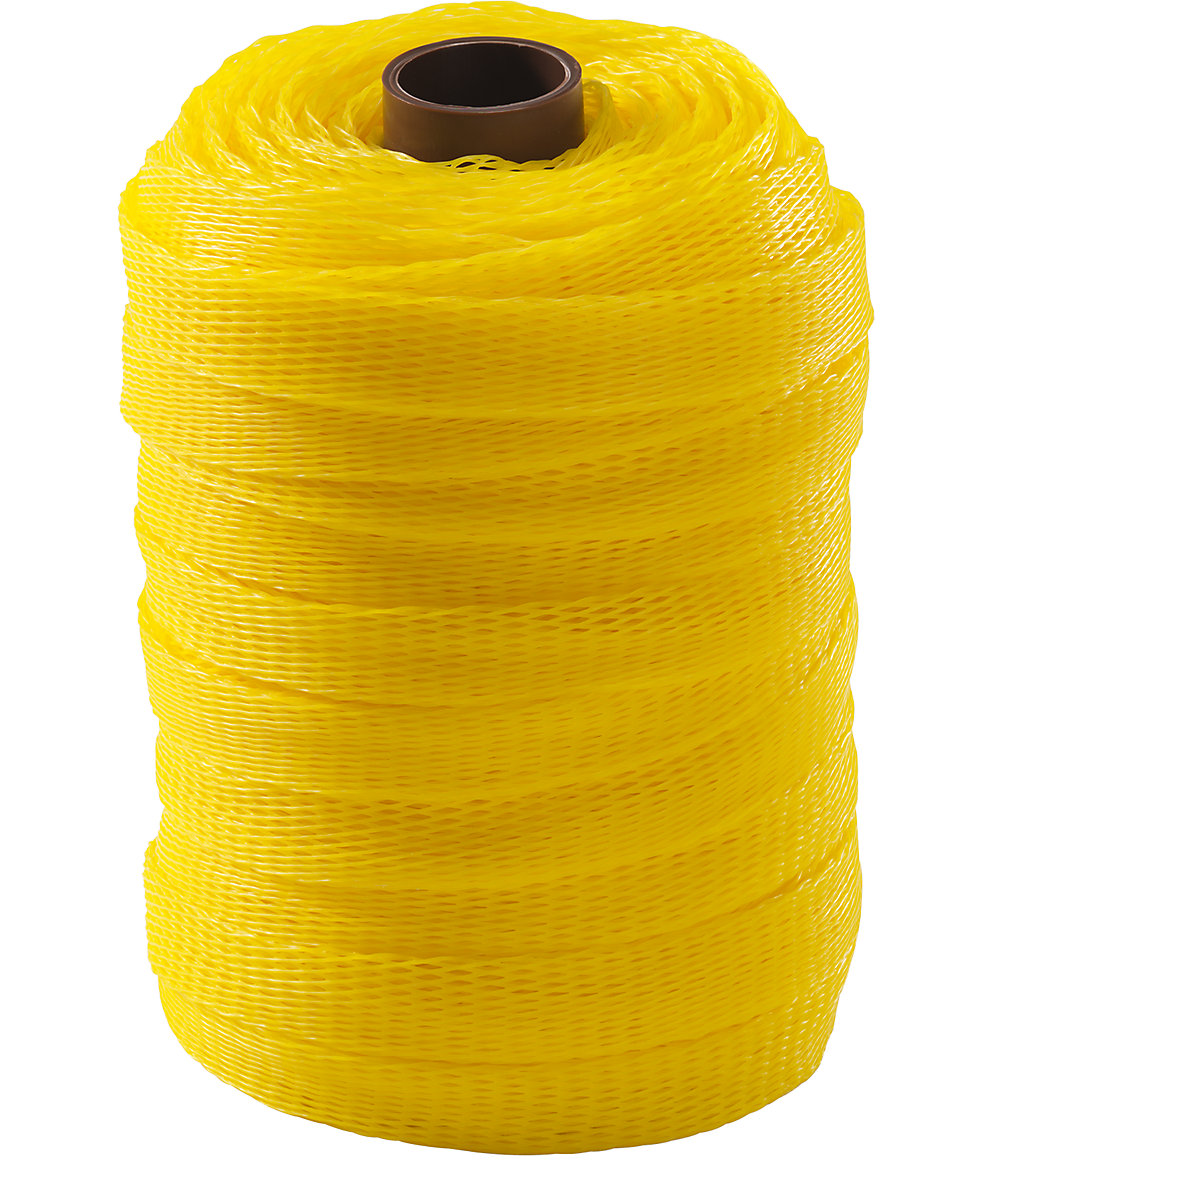 Materiaalbeschermingsnet, polyethyleen, 1 rol, geel, voor Ø 25 – 50 mm-6